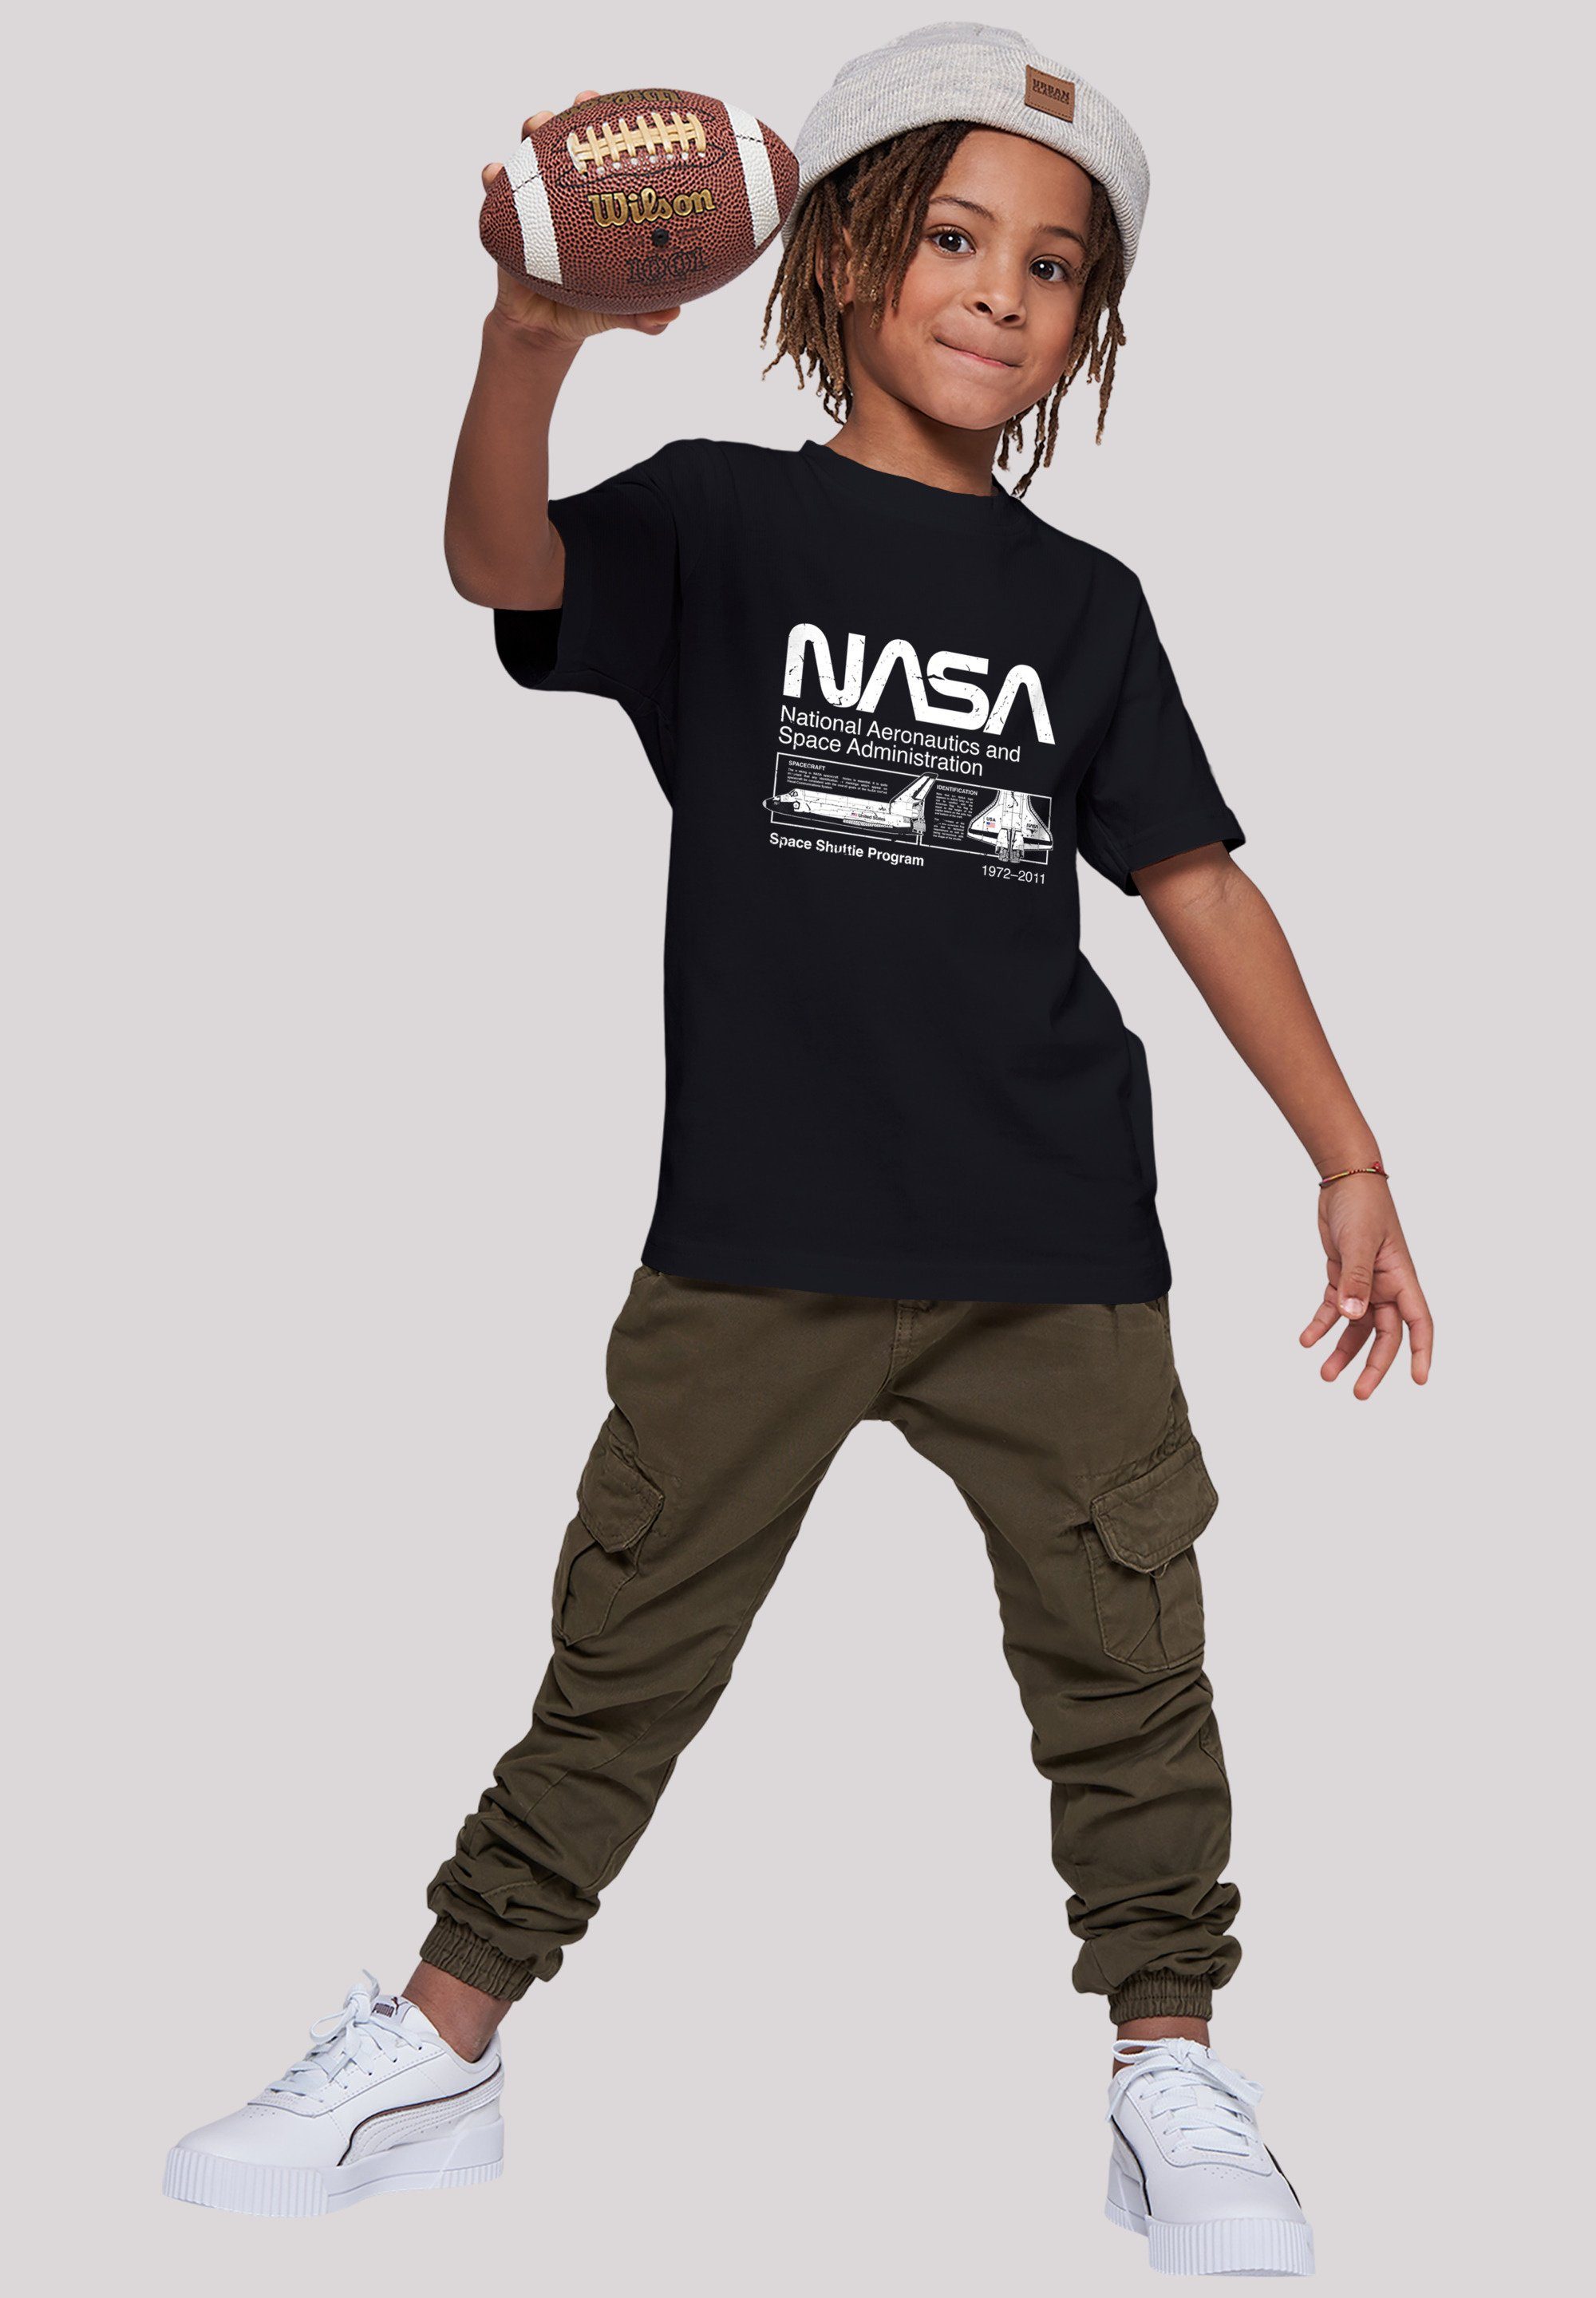 NASA Unisex Black Merch,Jungen,Mädchen,Bedruckt Shuttle Space Classic T-Shirt F4NT4STIC Kinder,Premium